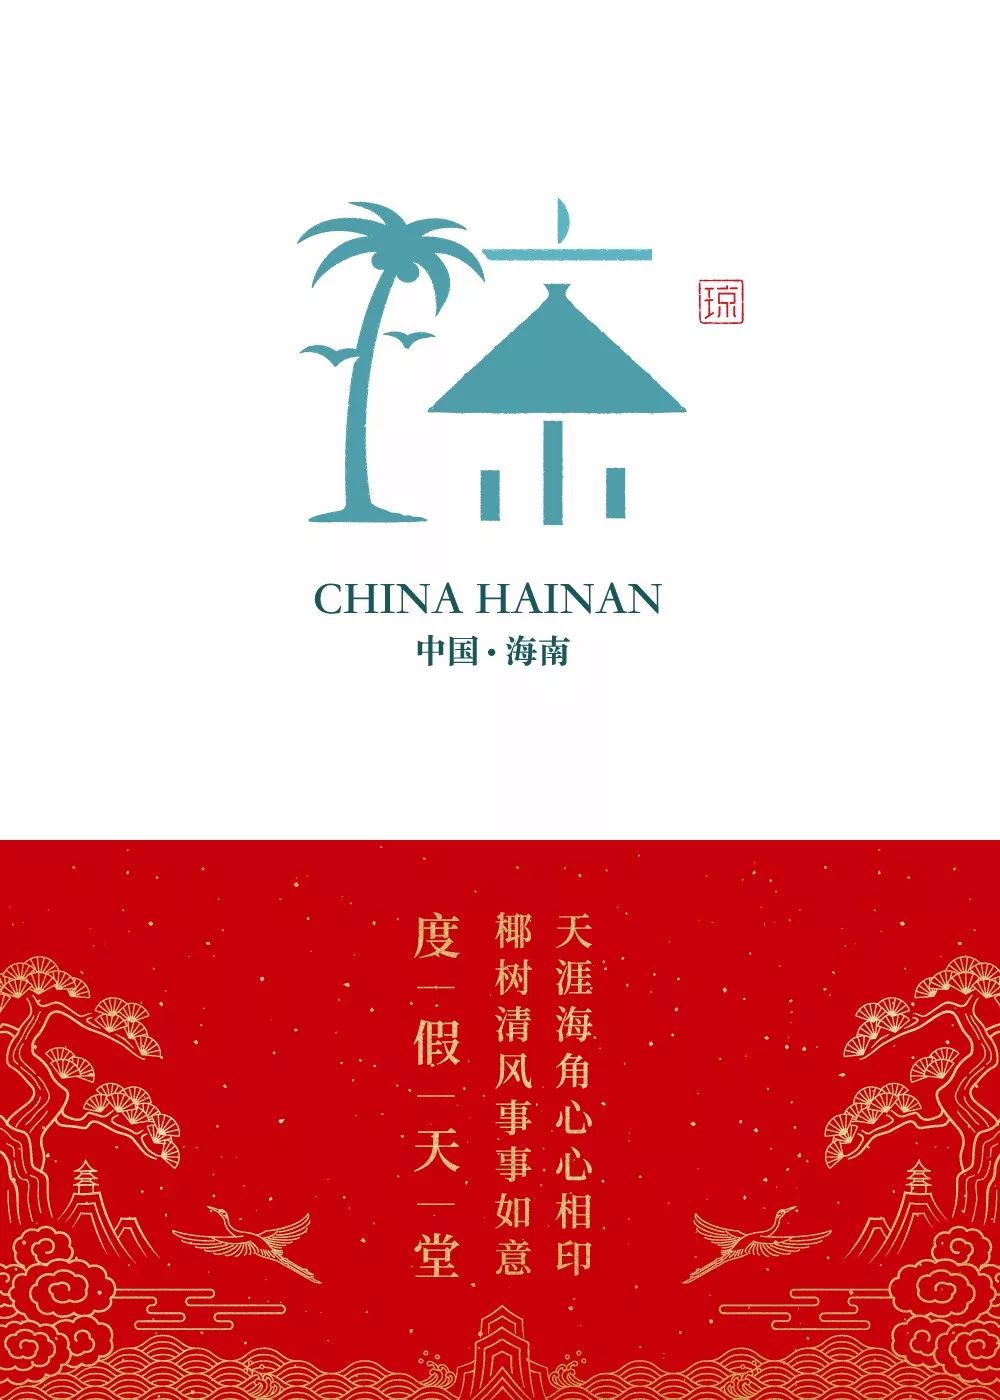 石昌鸿34个省市简称版字体设计，2020版全新发布！